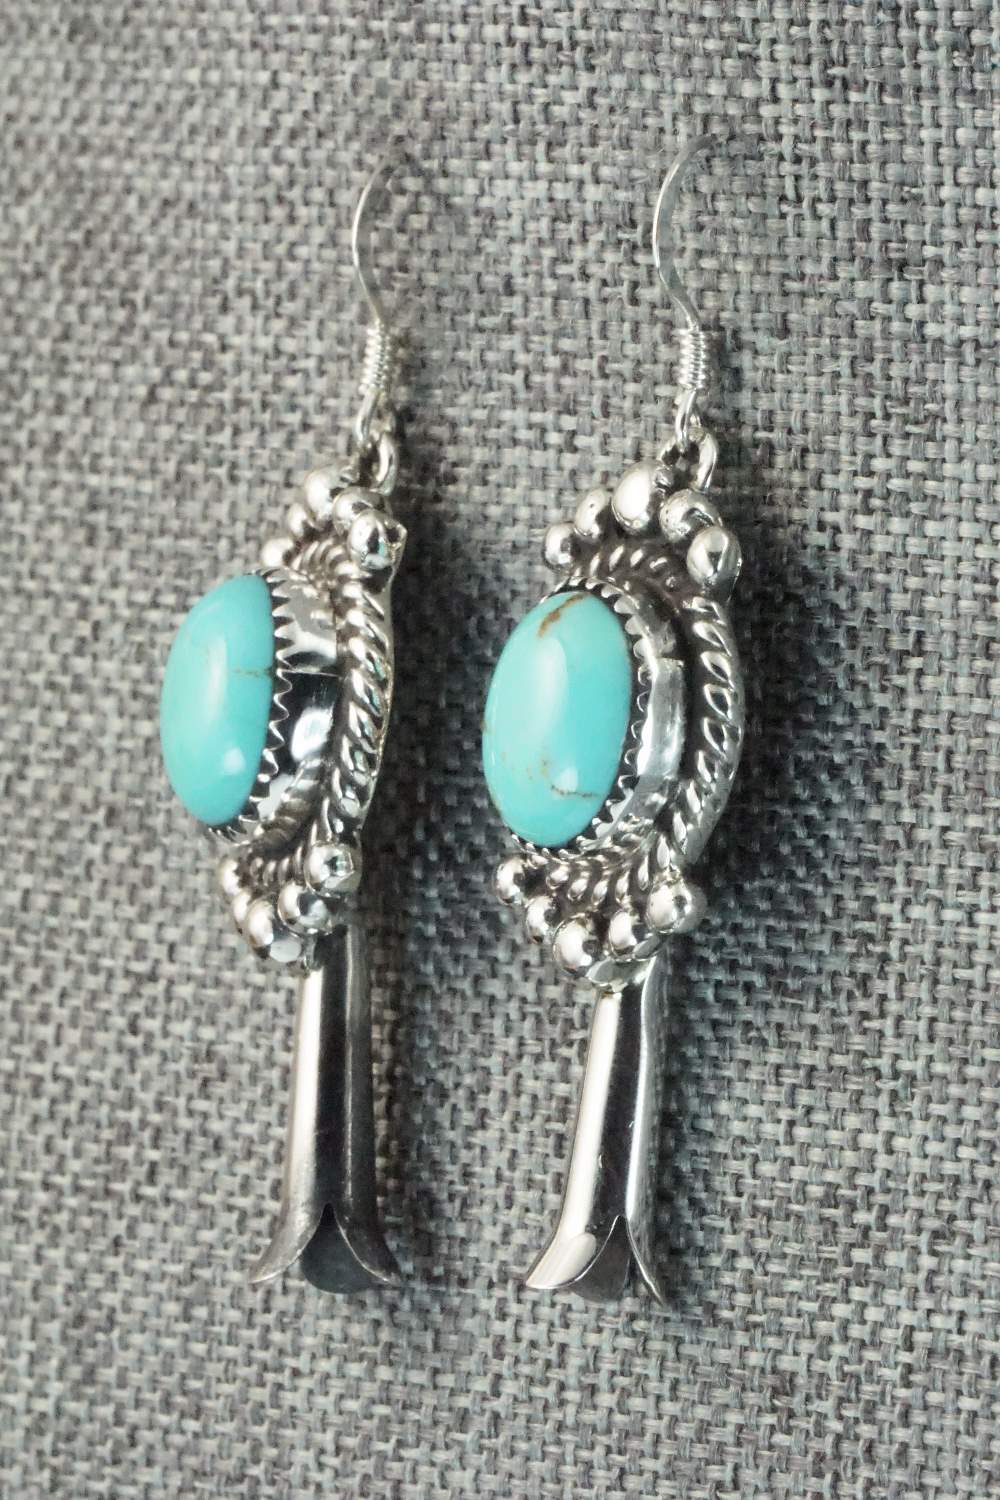 Turquoise & Sterling Silver Earrings - Vernon K Johnson